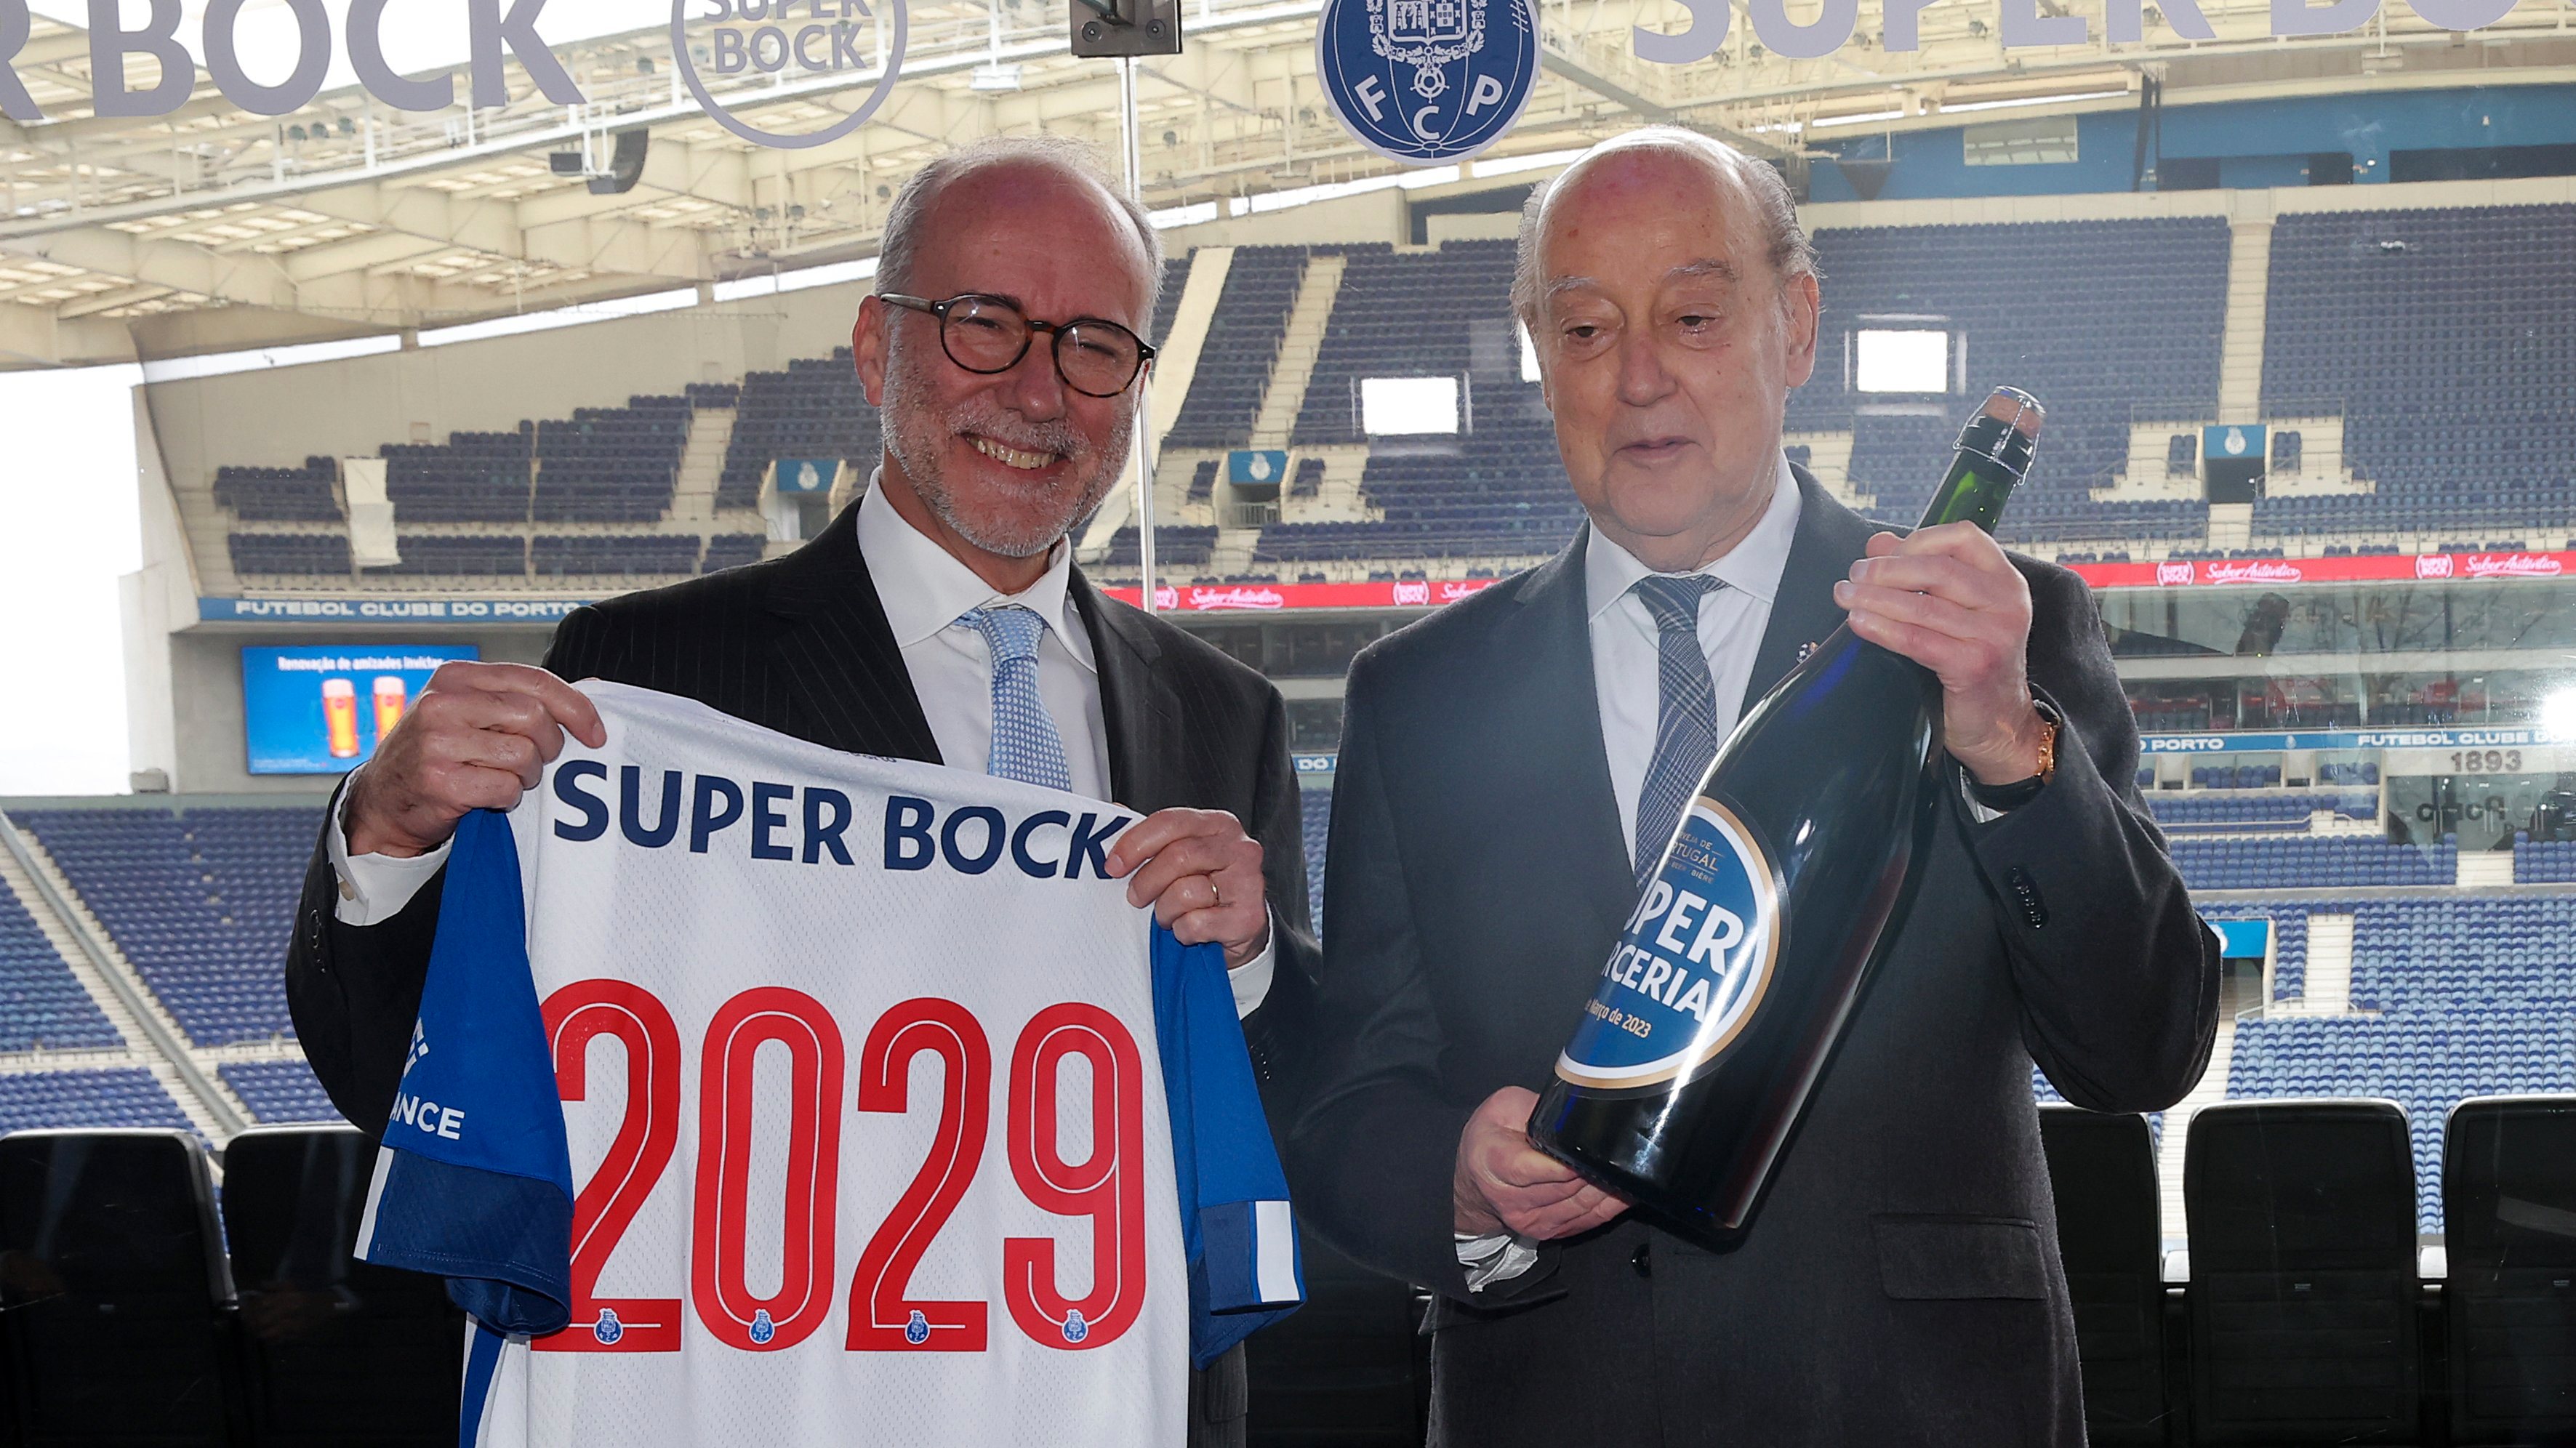 Pinto da Costa e Rui Lopes Ferreira, CEO do Super Bock Group, anunciaram o prolongamento da parceria entre clube e marca por mais cinco anos